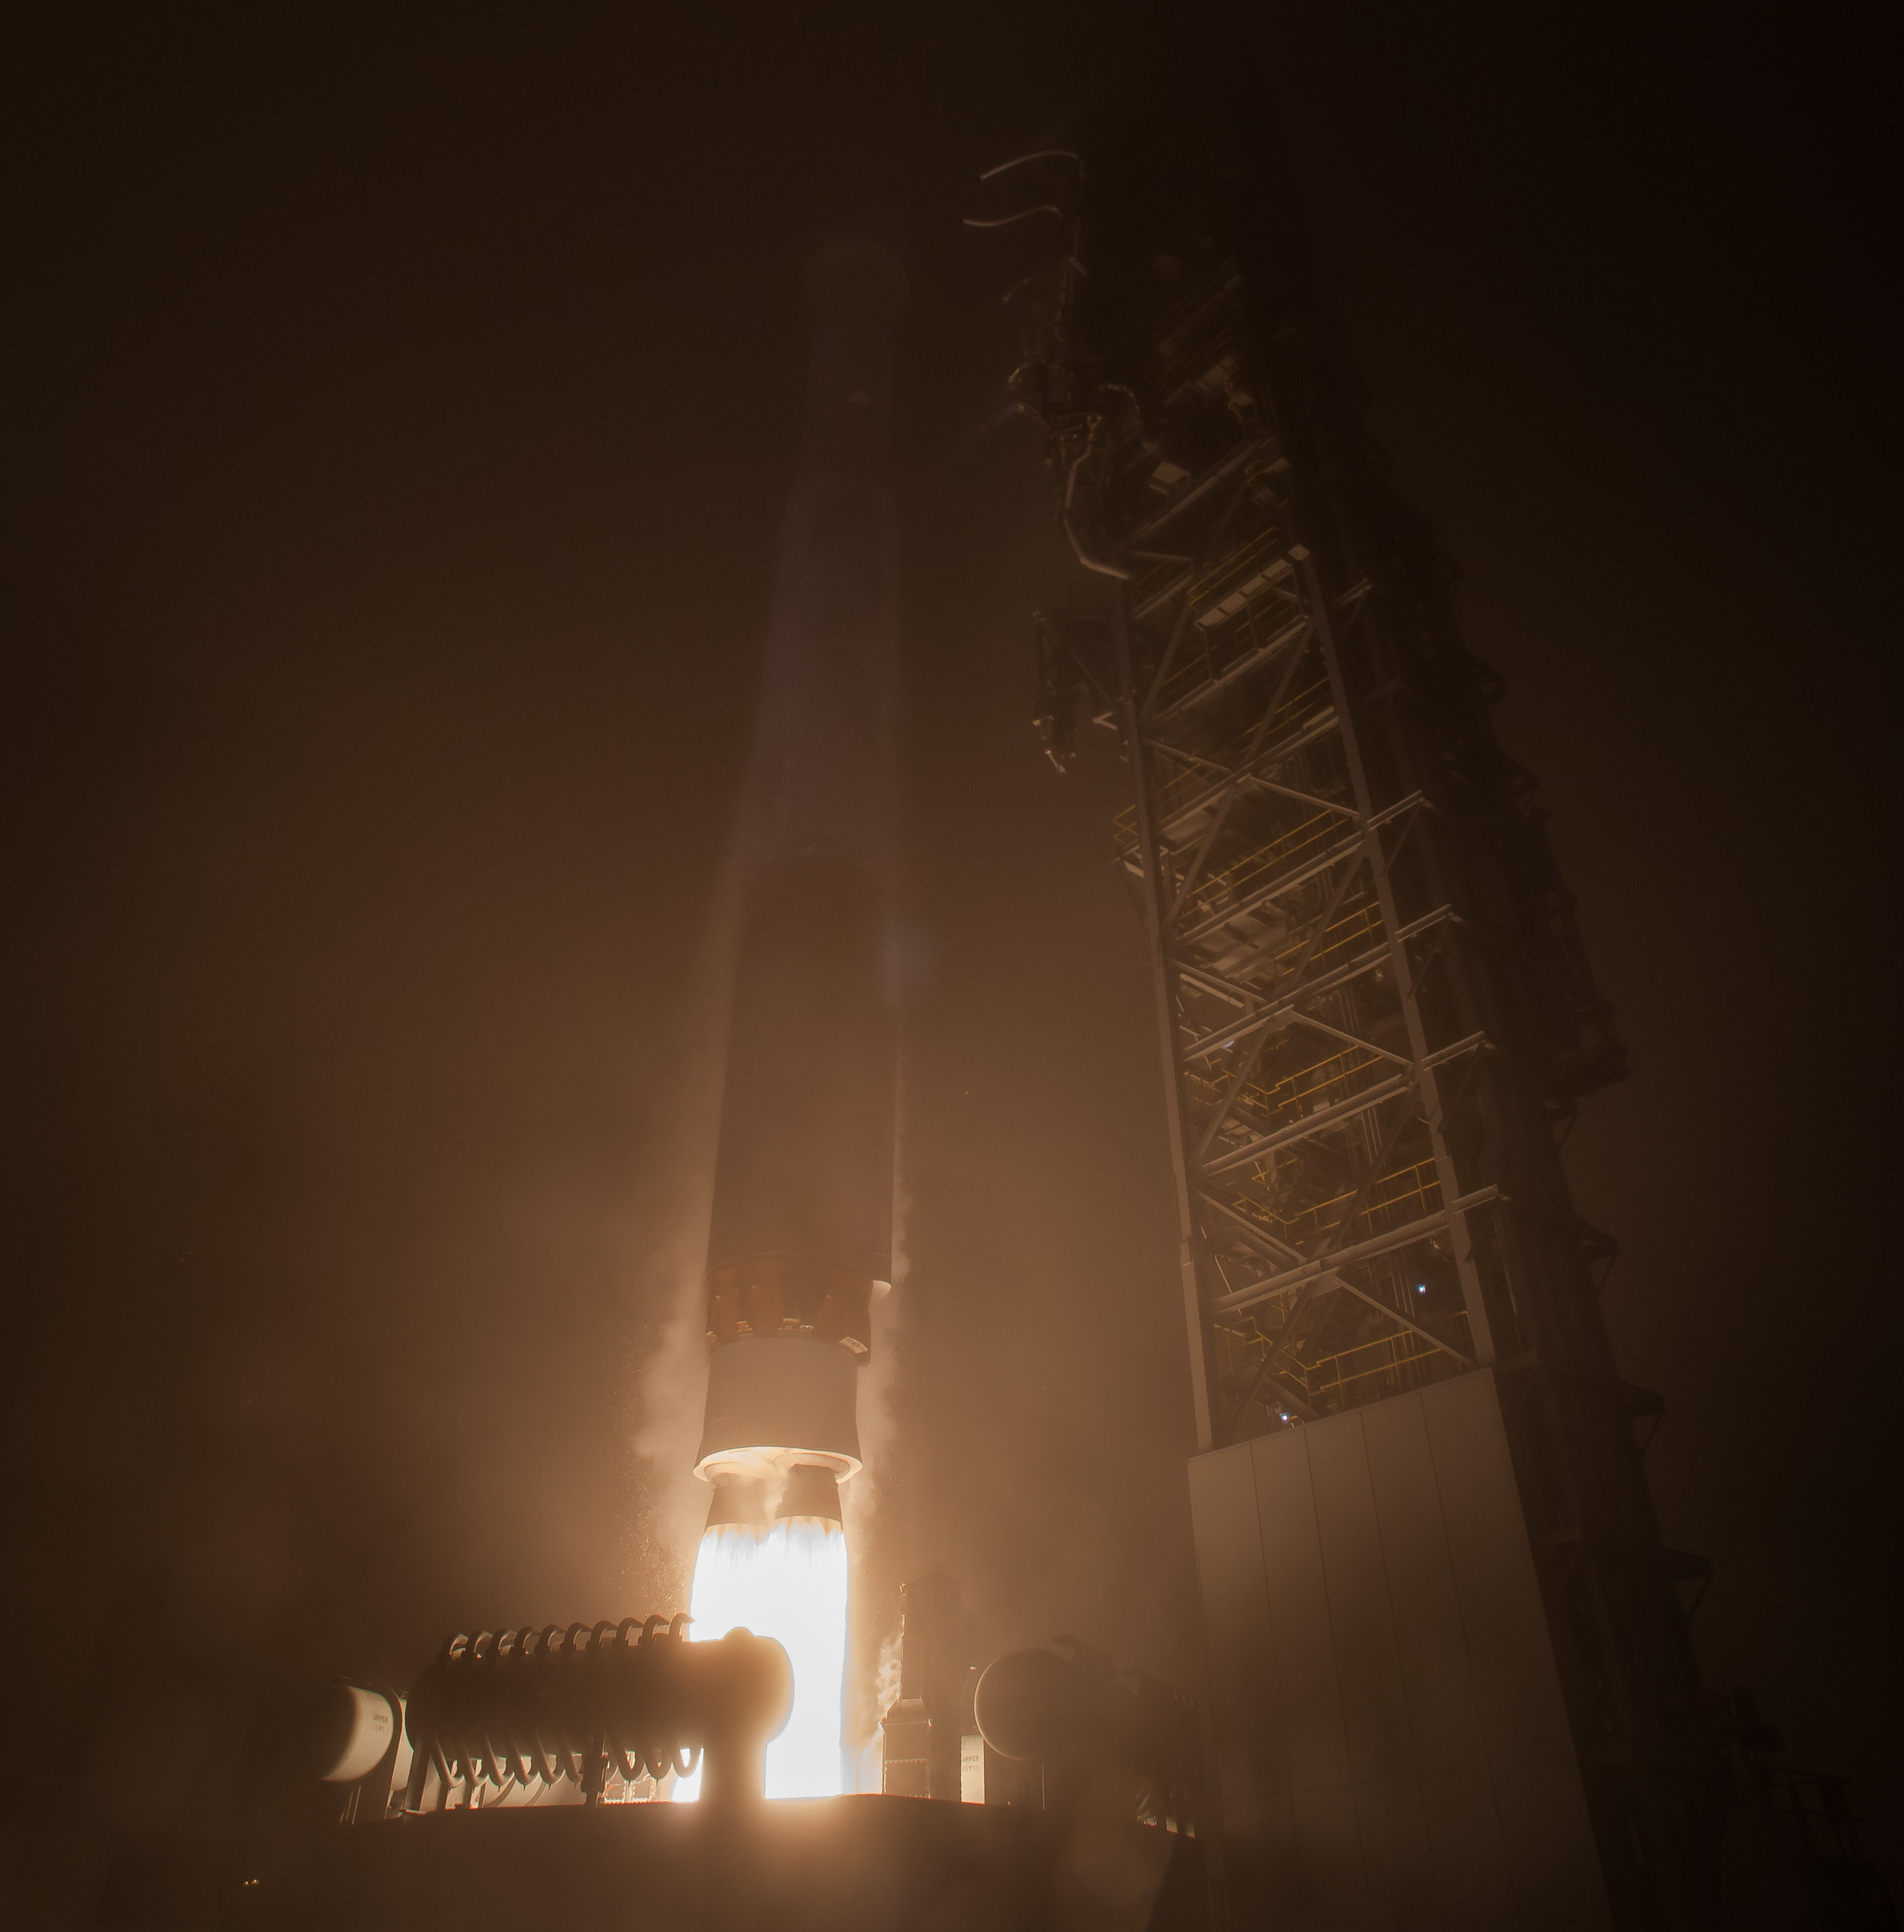 Rocket launching in fog.